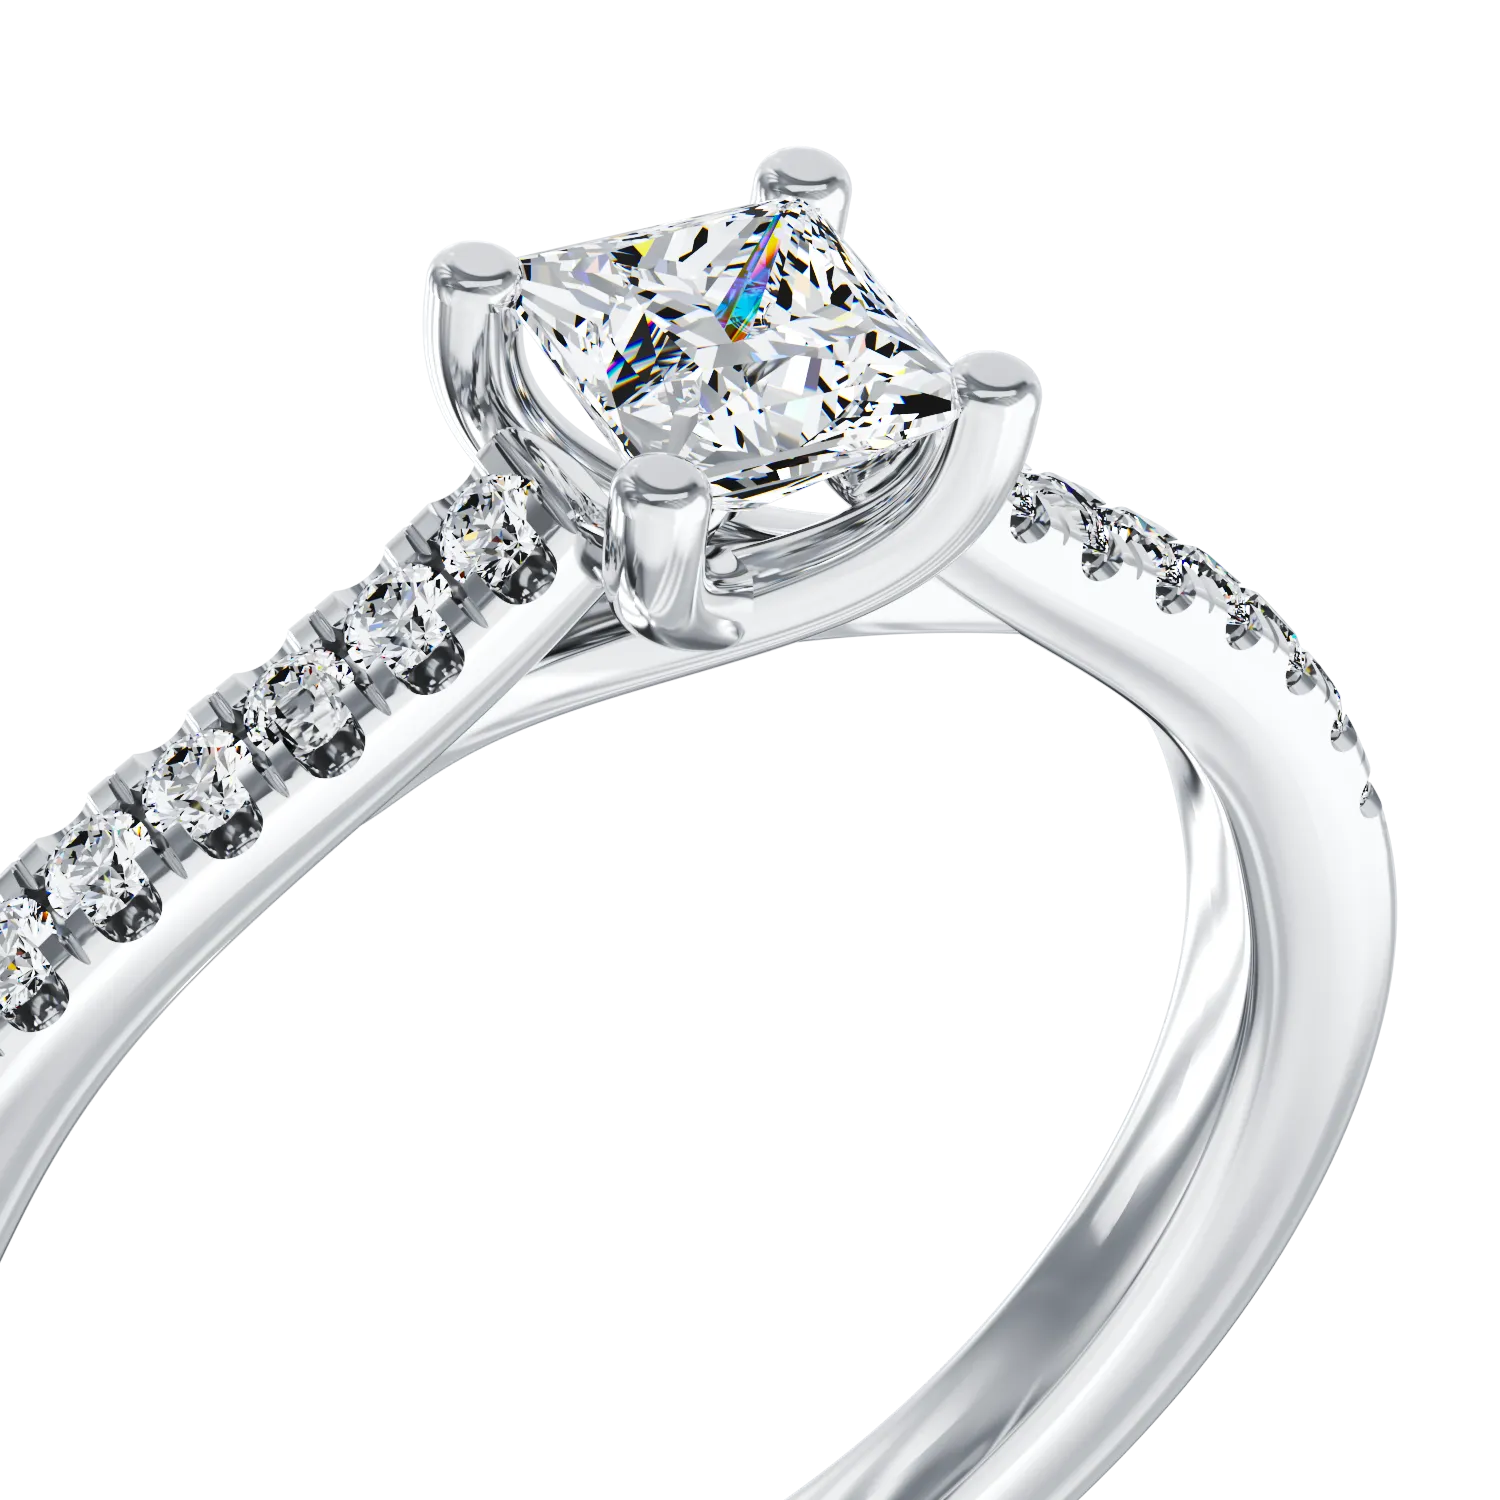 Eljegyzési gyűrű 18K-os fehér aranyból 0,245ct gyémánttal és 0,11ct gyémánttal